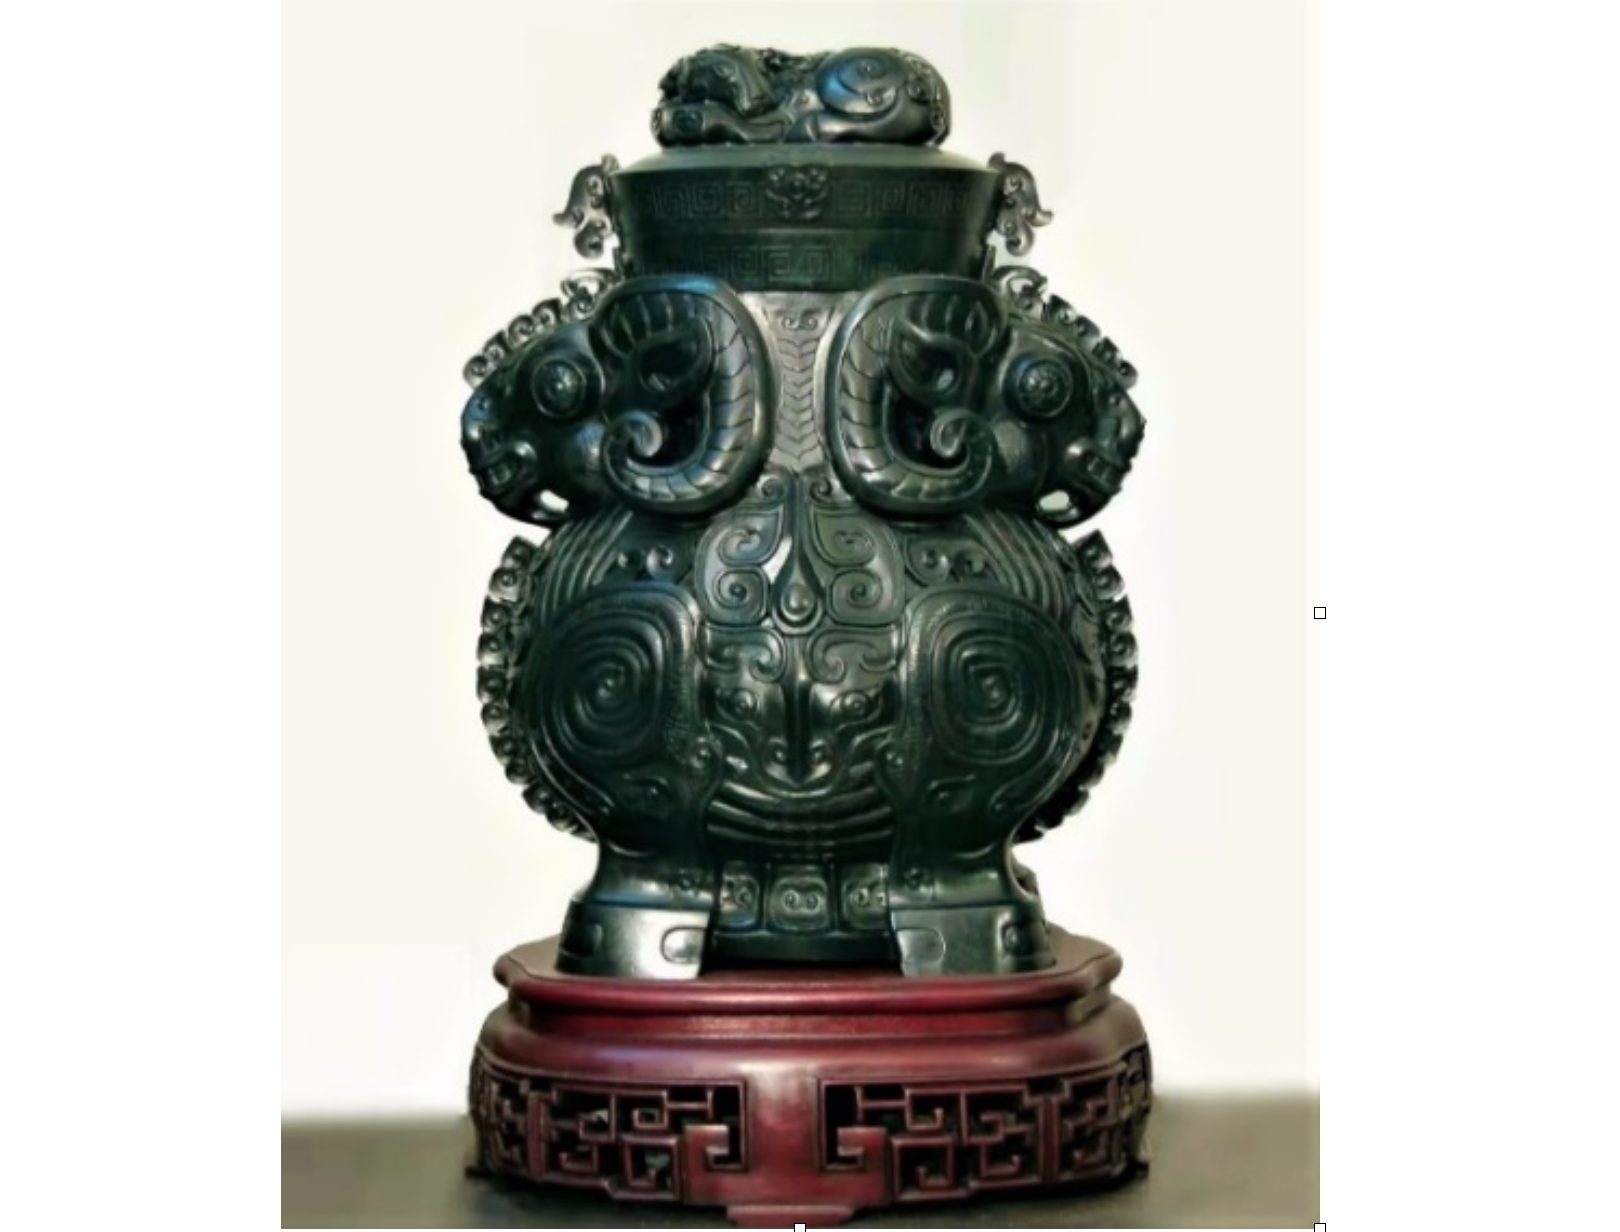 中国玉雕仿古器皿与加碧渊源